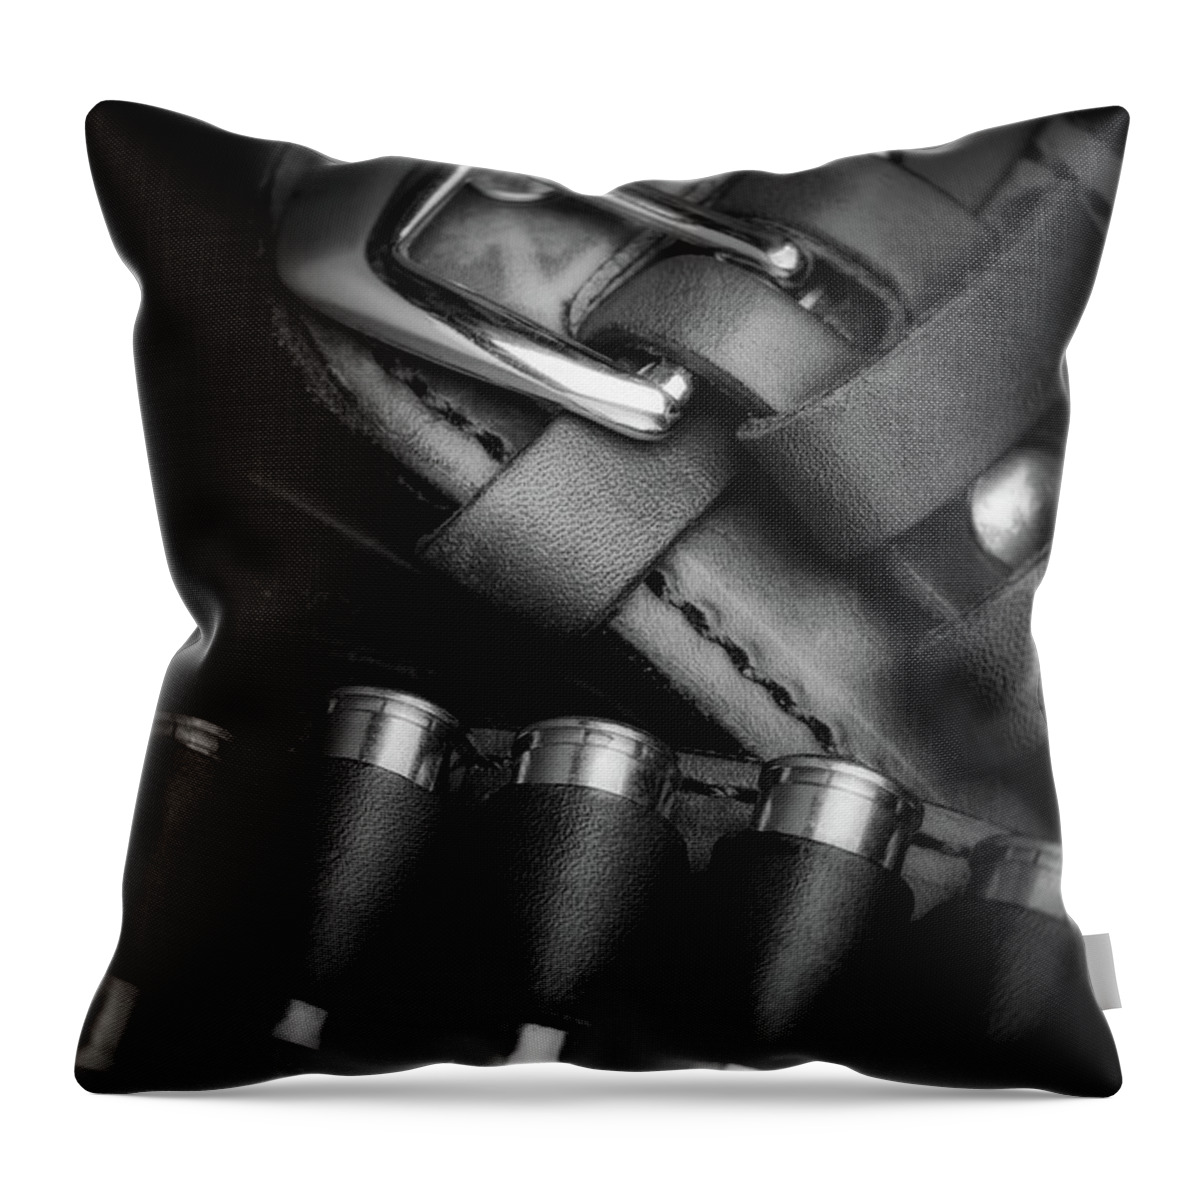 Colt Throw Pillow featuring the photograph Gunbelt by Tom Mc Nemar